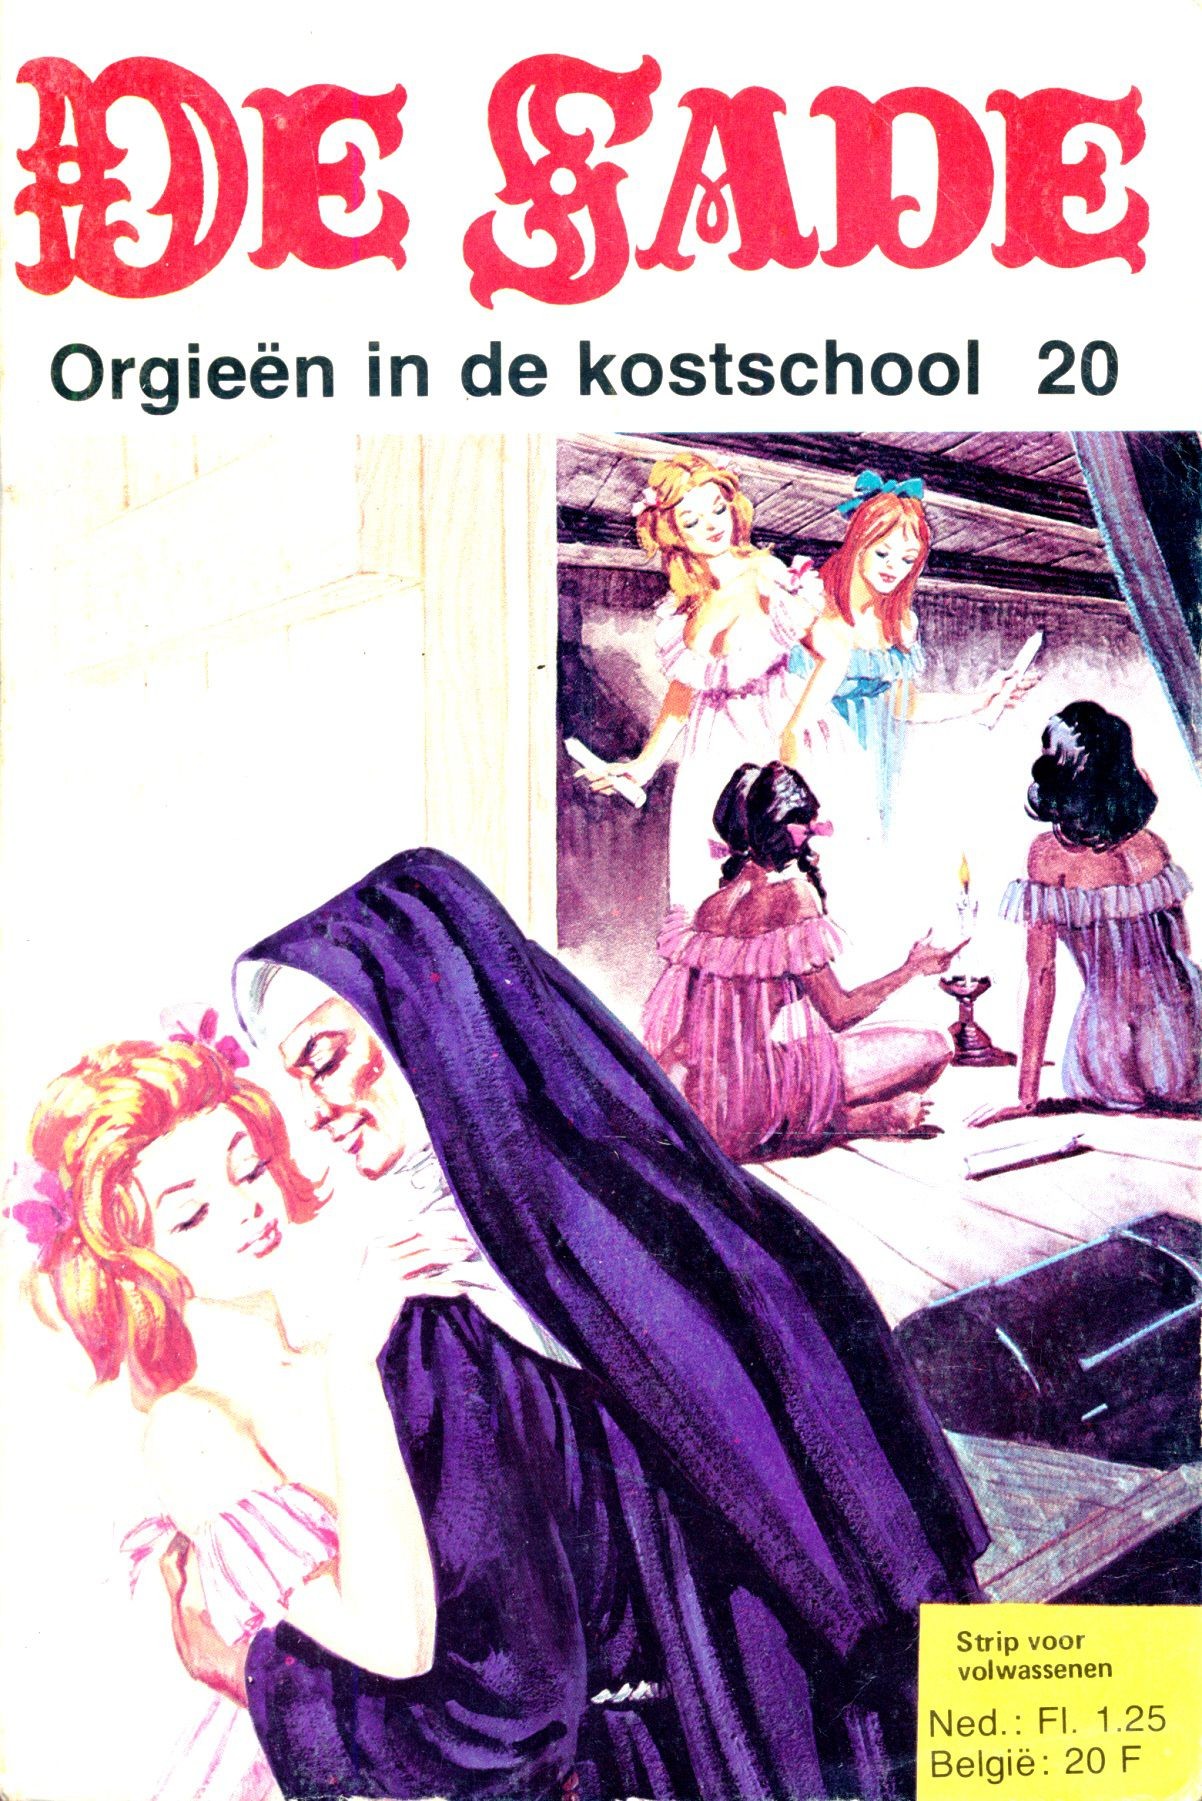 Outdoors Orgieën In De Kostschool (Dutch) In 5 Series...53 Nog Niet Geplaatste Strips Uit De "De Sade" Serie Tease